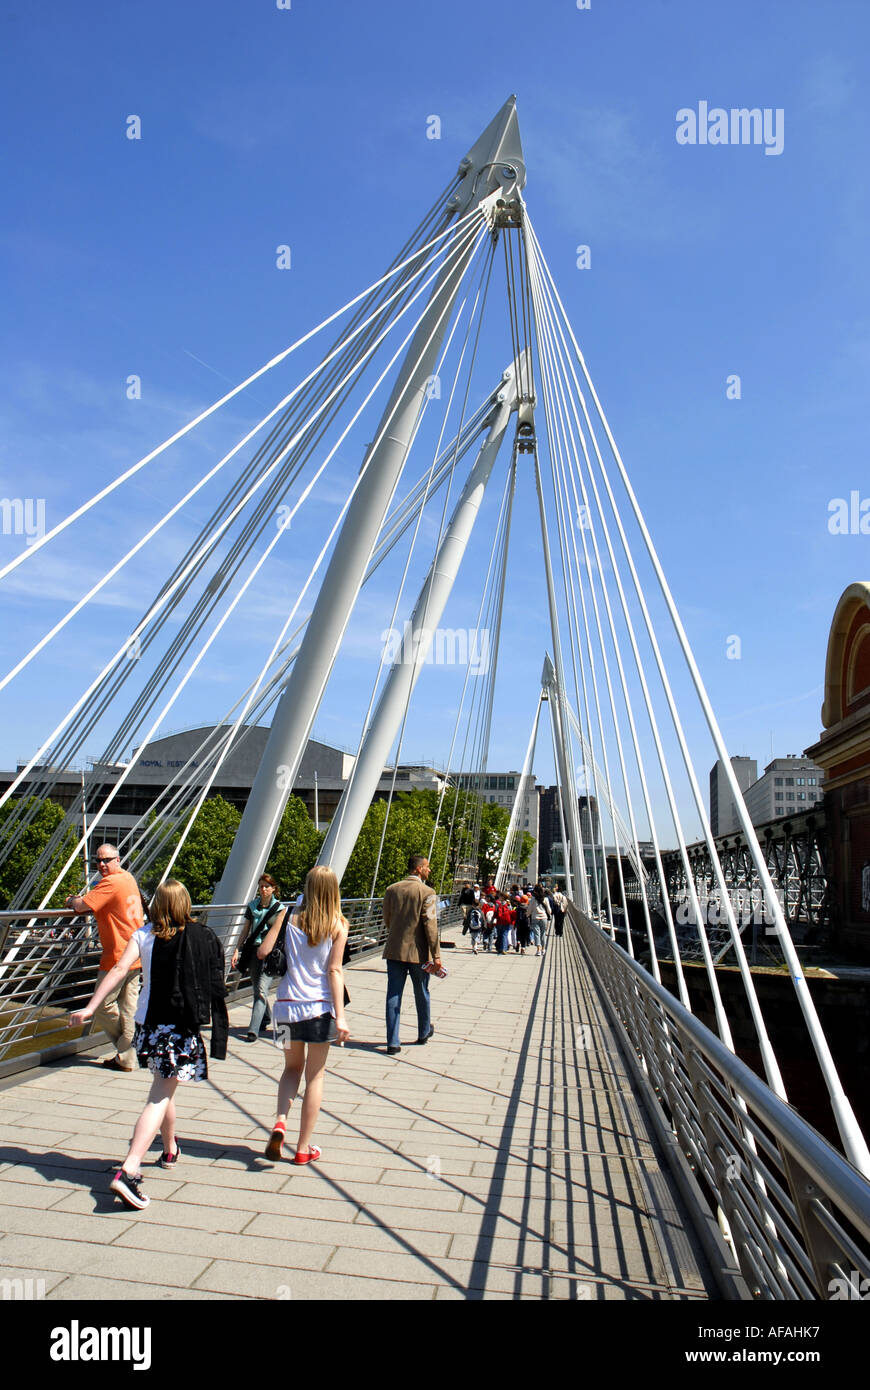 Les touristes marcher sur Hungerford Bridge vers la Southbank, salle des fêtes, traversant la Tamise. Londres, Angleterre, Royaume-Uni. Banque D'Images